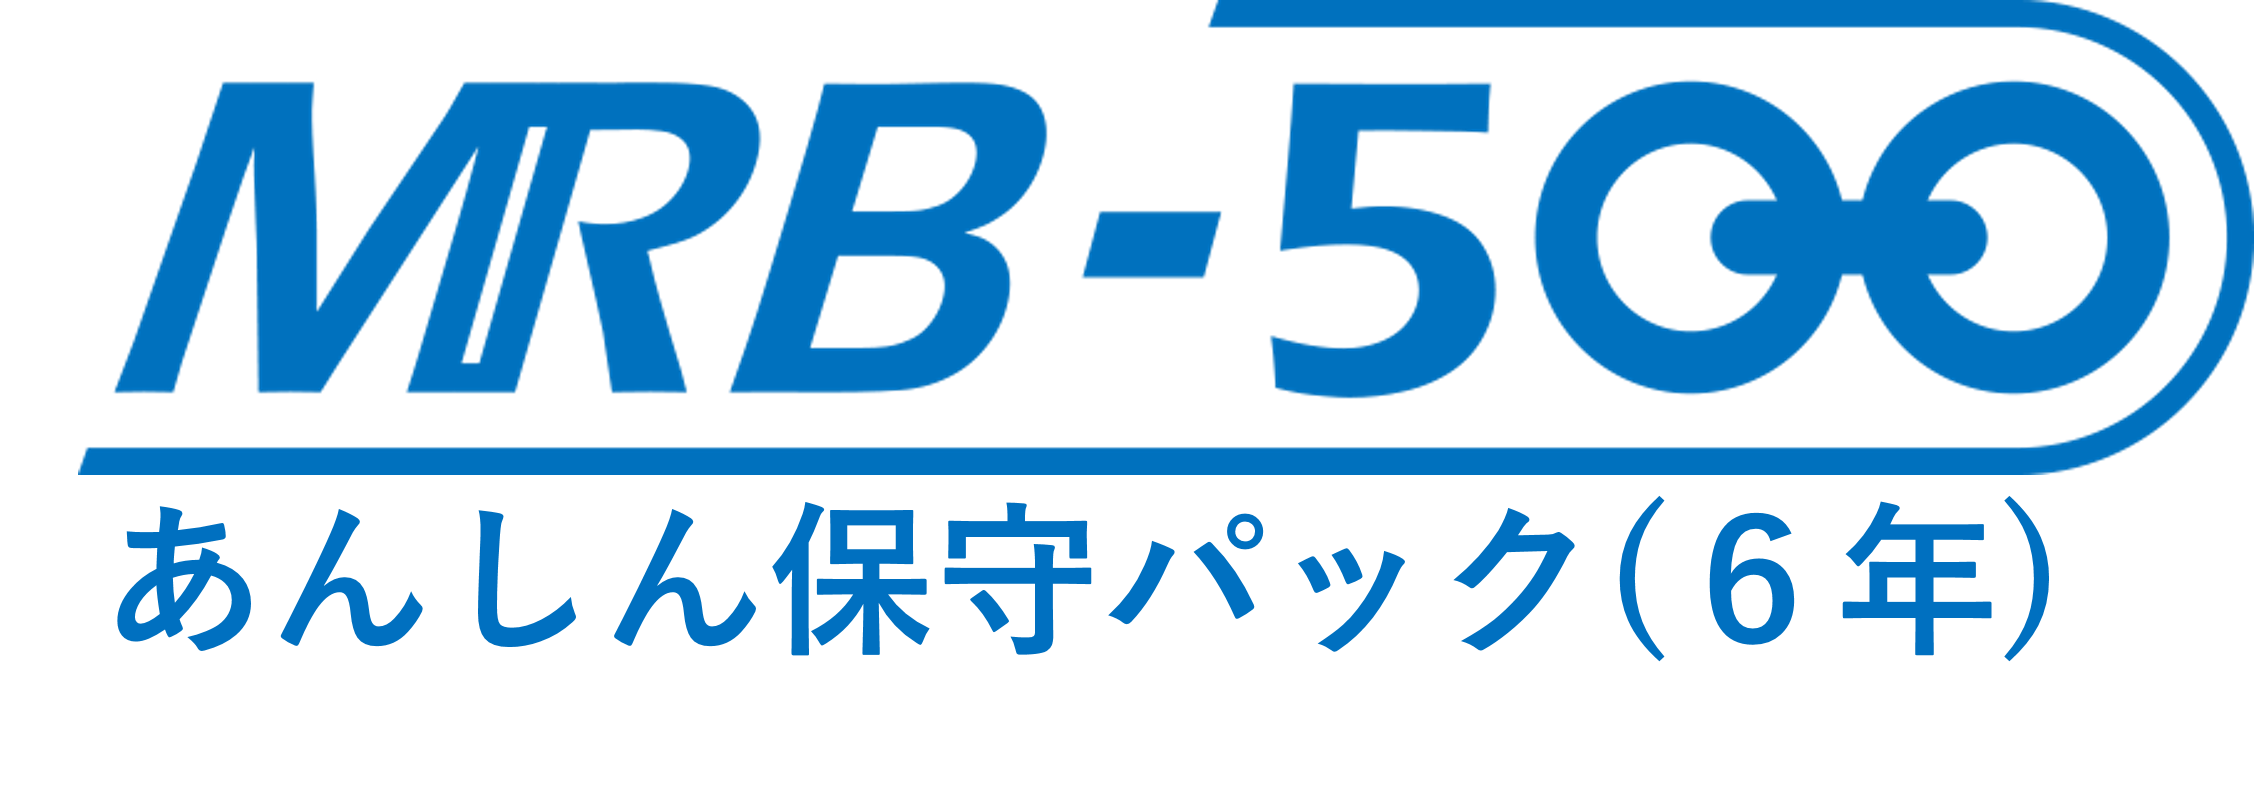 MRB-500あんしん保守パック(6年間)